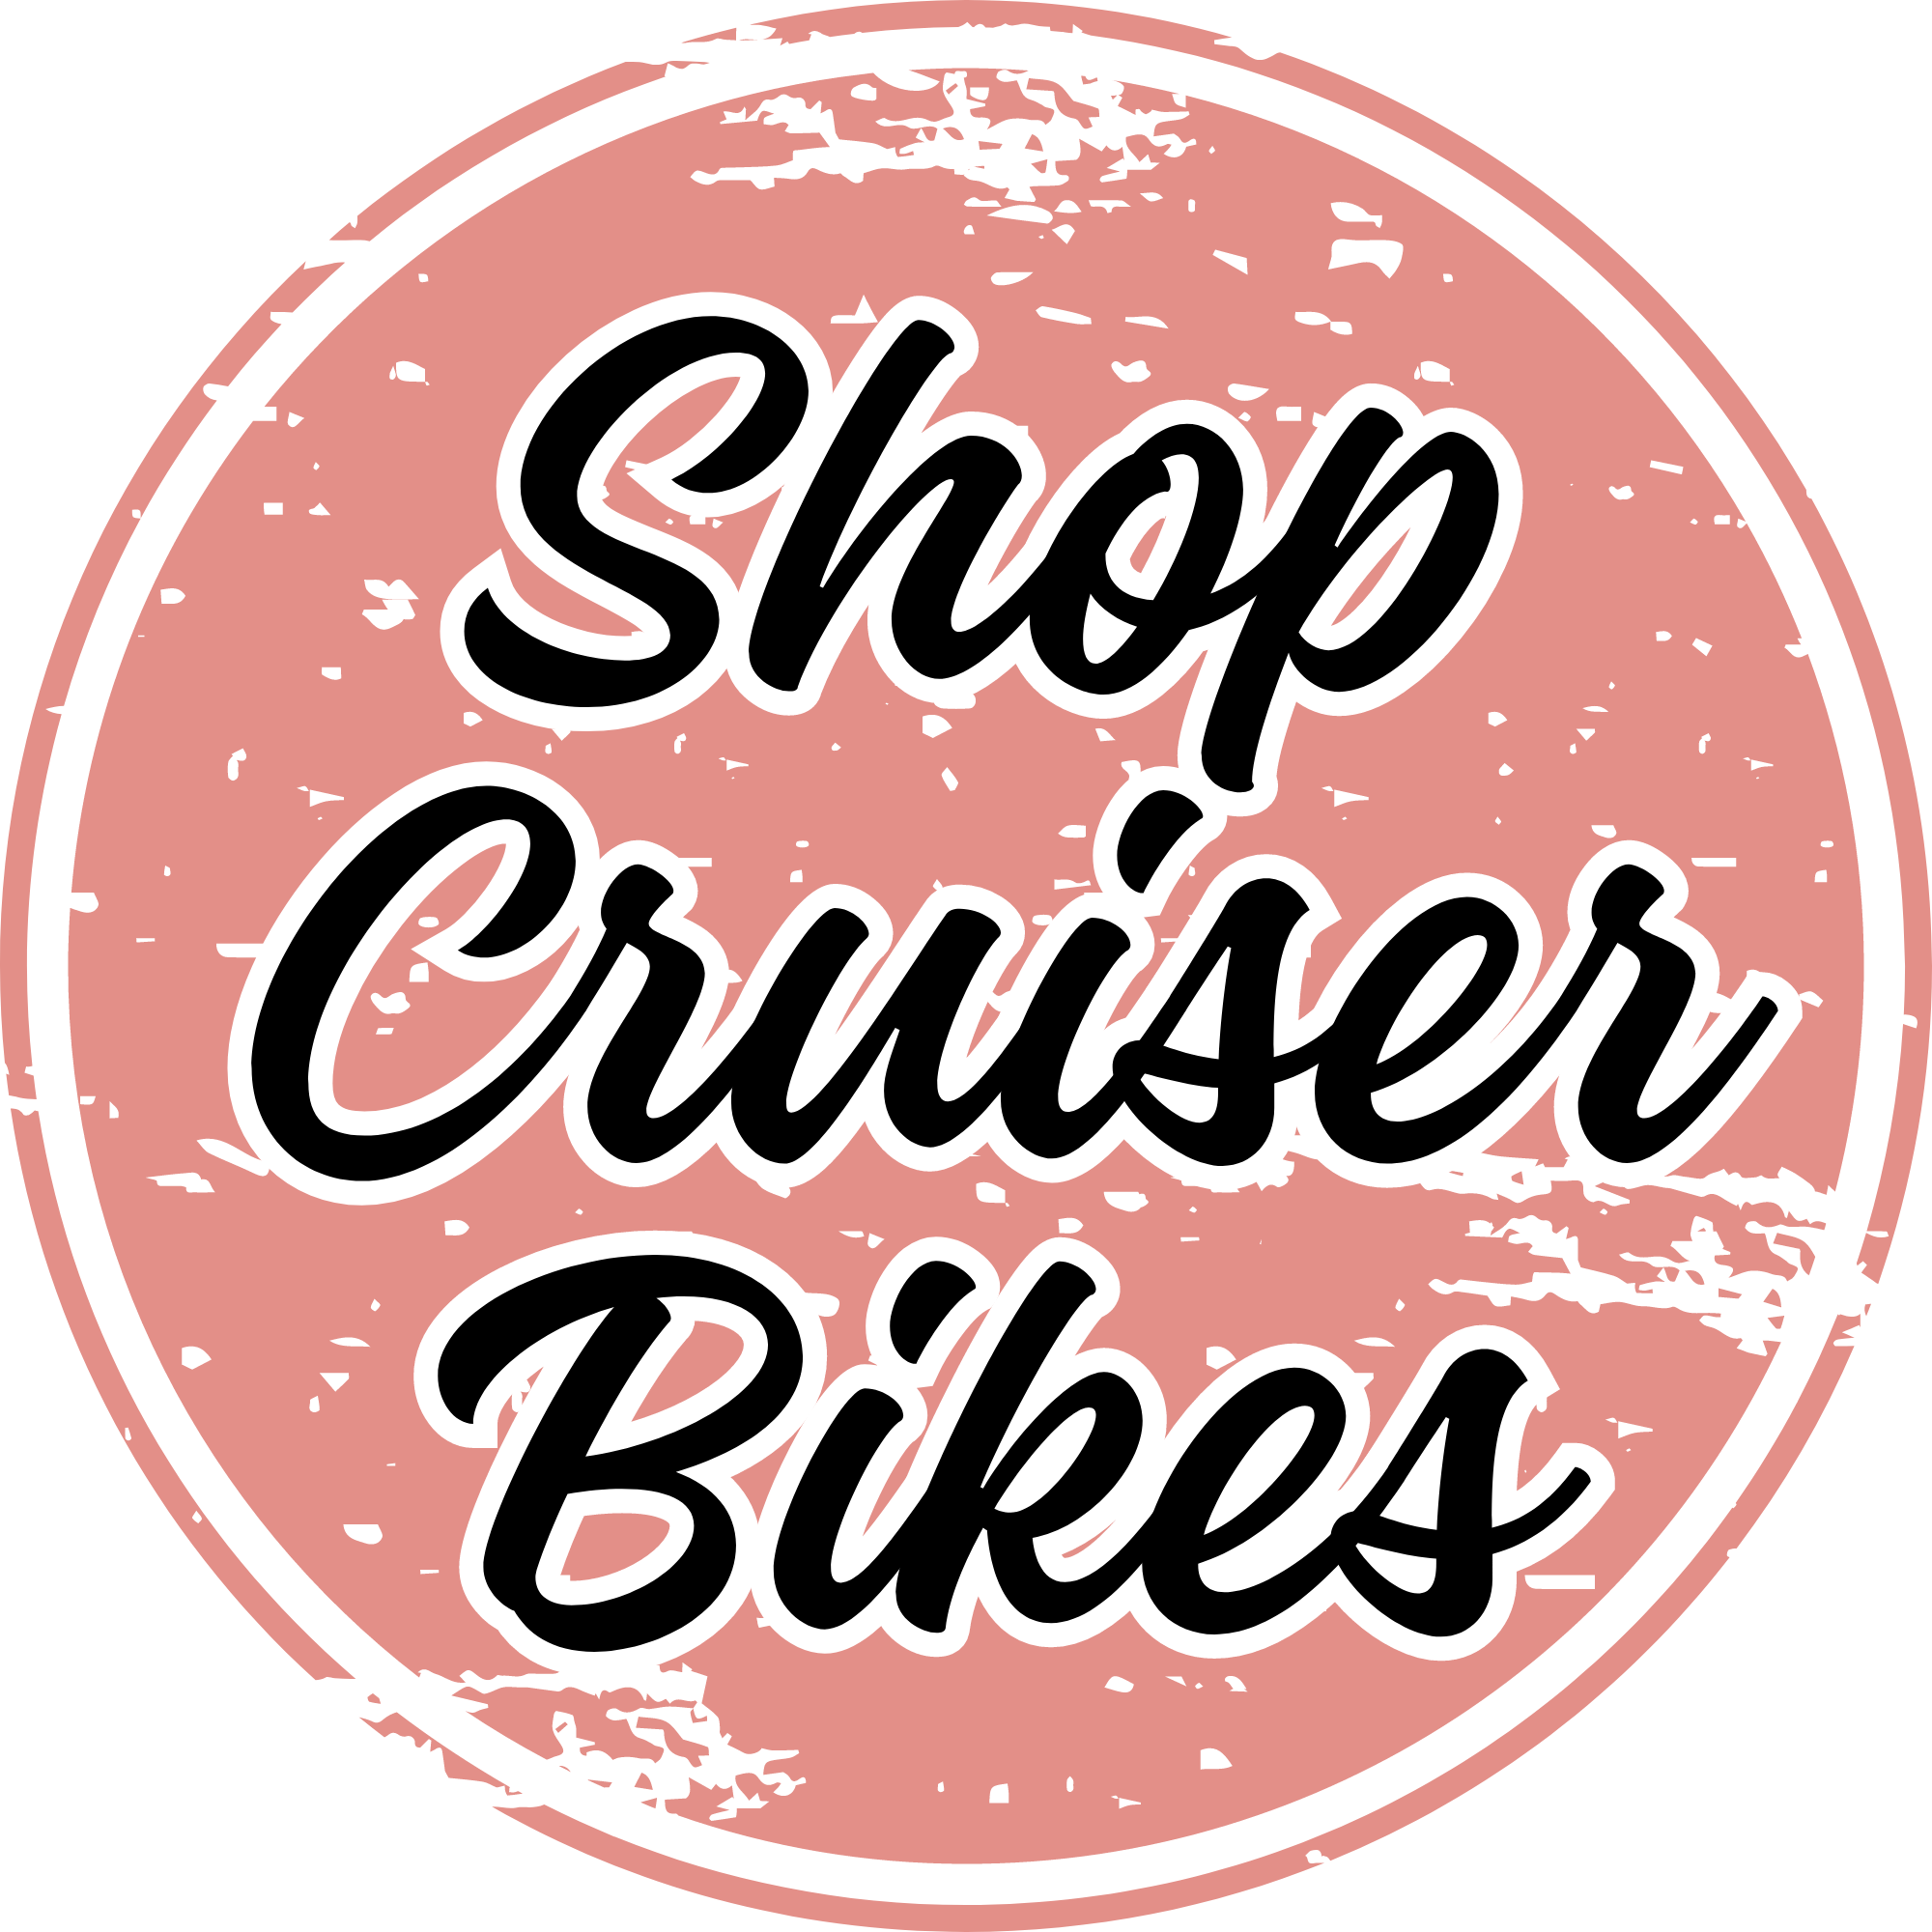 Shop E-bikes (3)